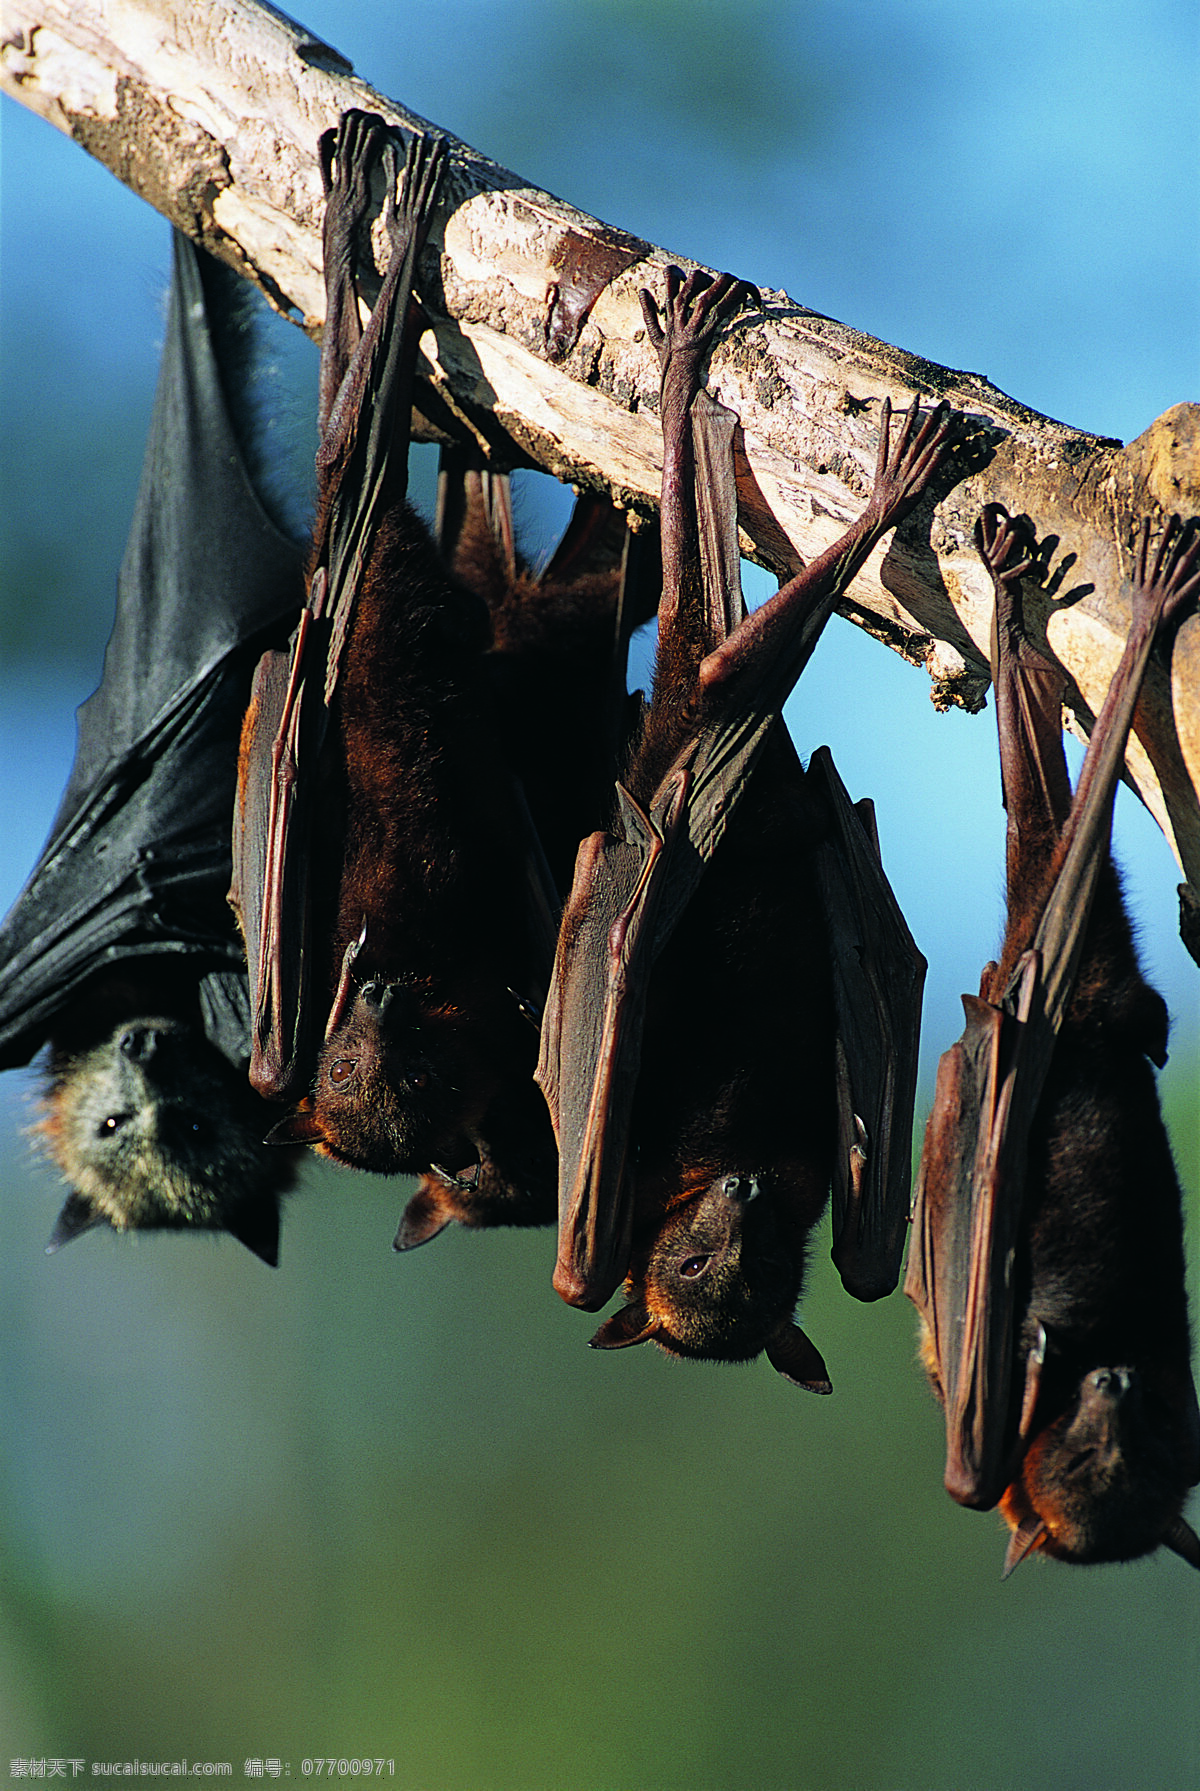 蝙蝠图片素材 野生动物 动物世界 哺乳动物 蝙蝠 摄影图 陆地动物 生物世界